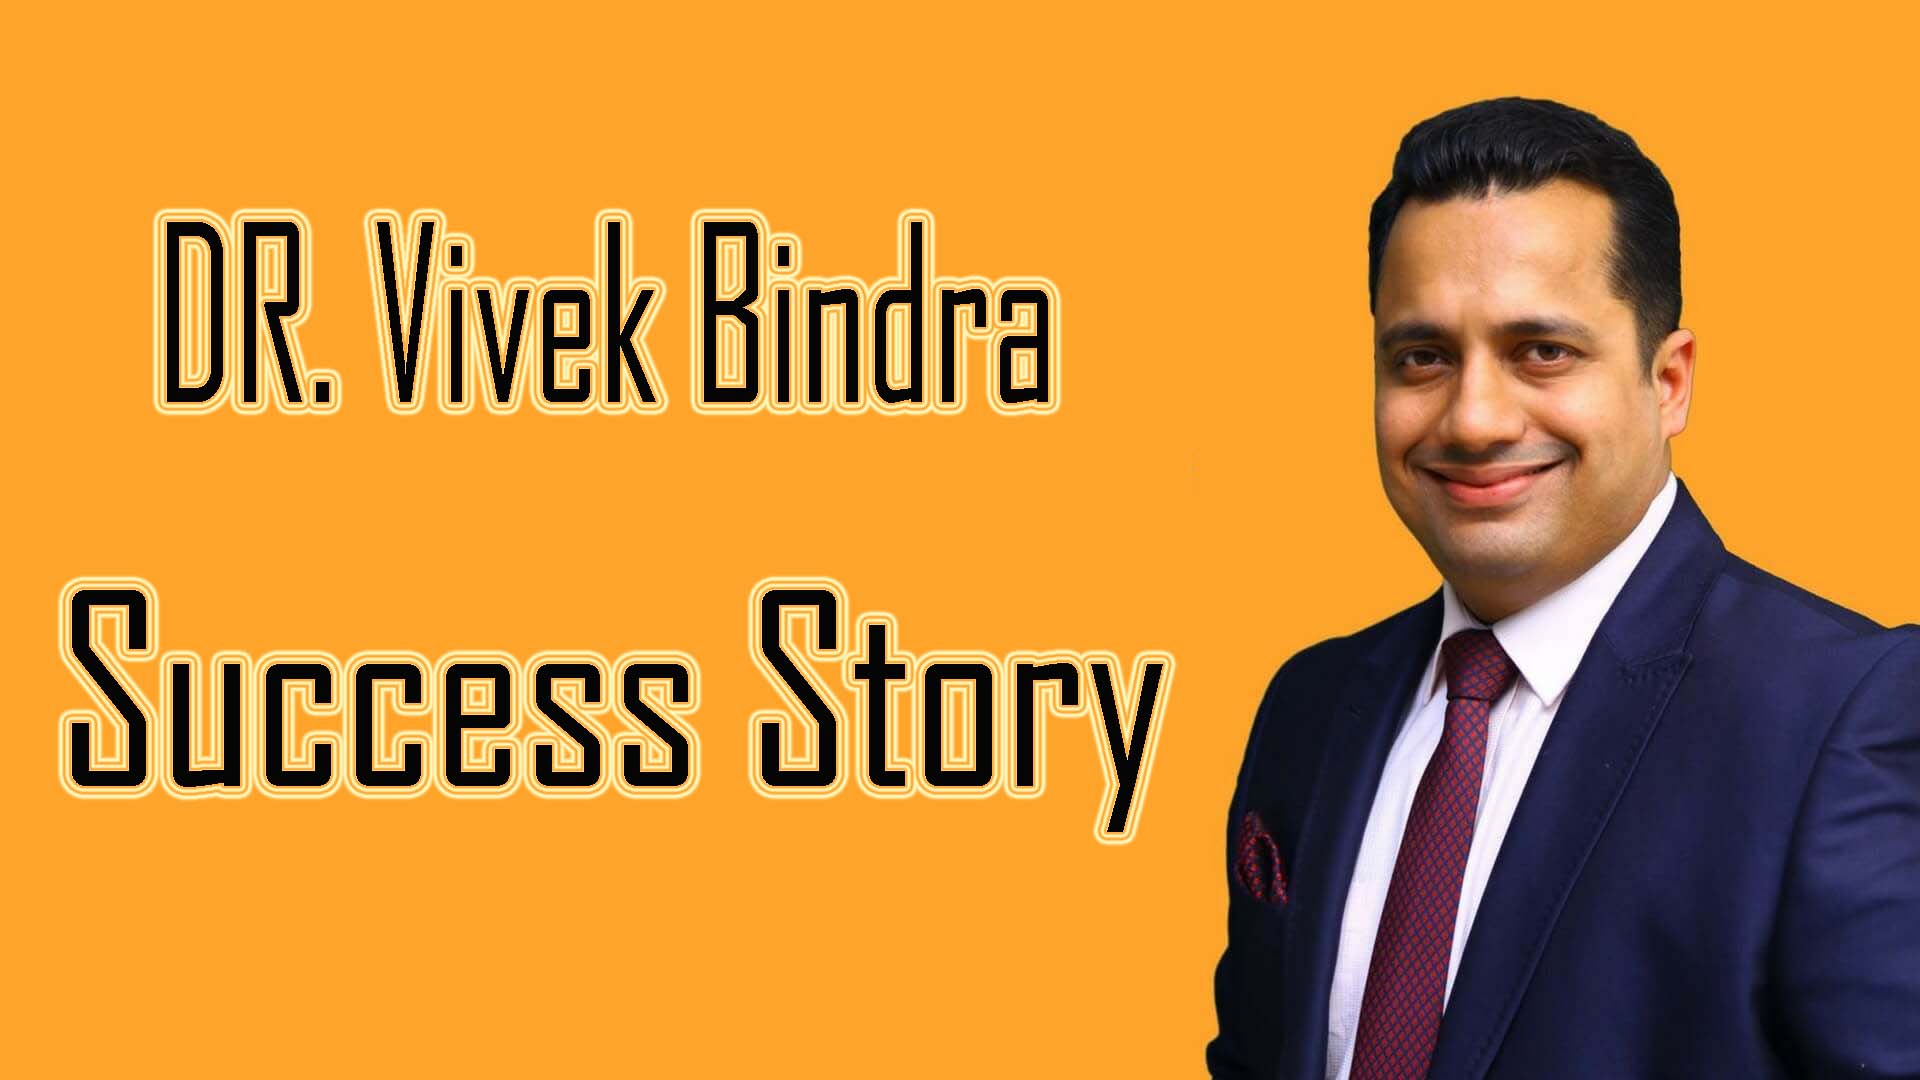 Dr. Vivek Bindra Biography and Success Story in Hindi